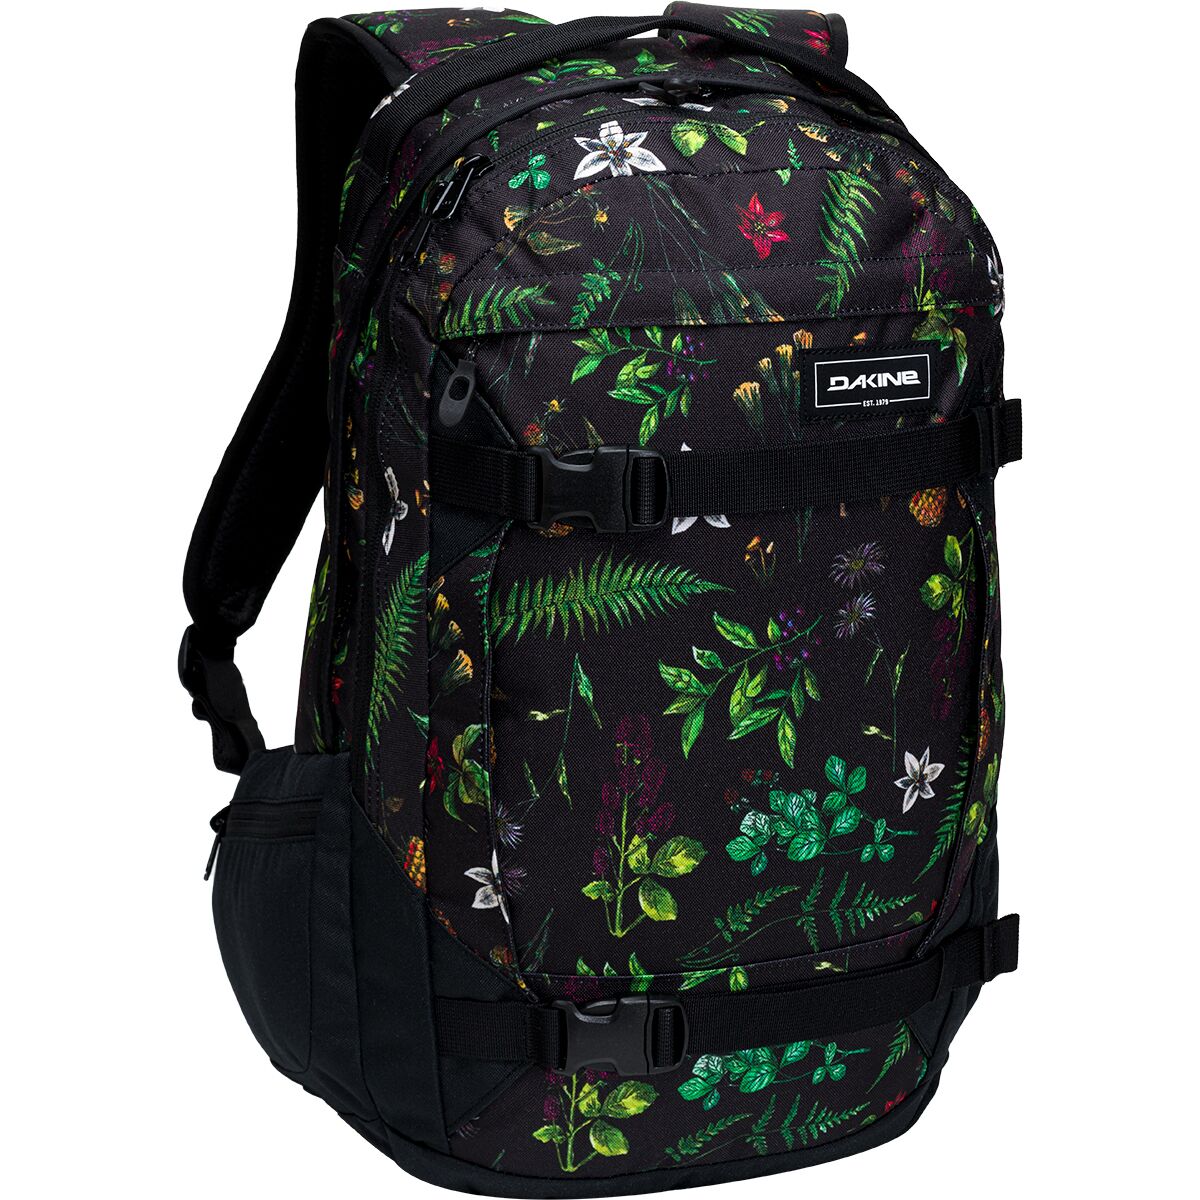 DAKINE Mission 25L Backpack - Women's Woodland Floral